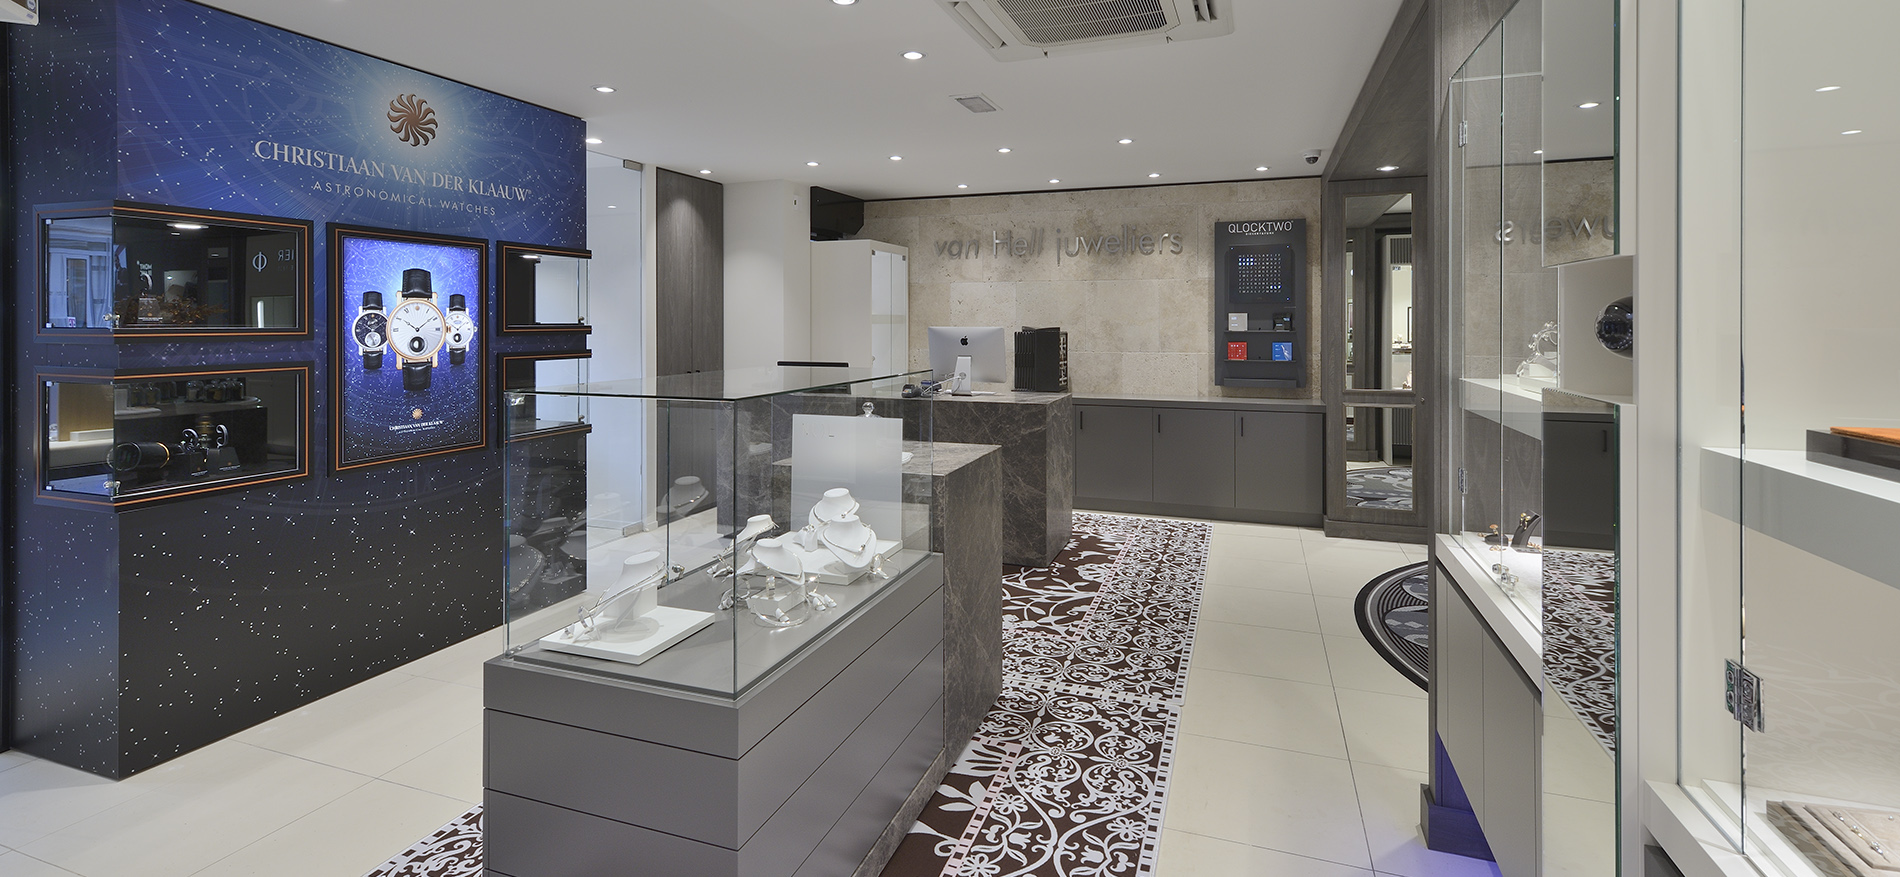 van Hell Juweliers, Apeldoorn (NL): Luxury Store design jeweler with famous brands - 